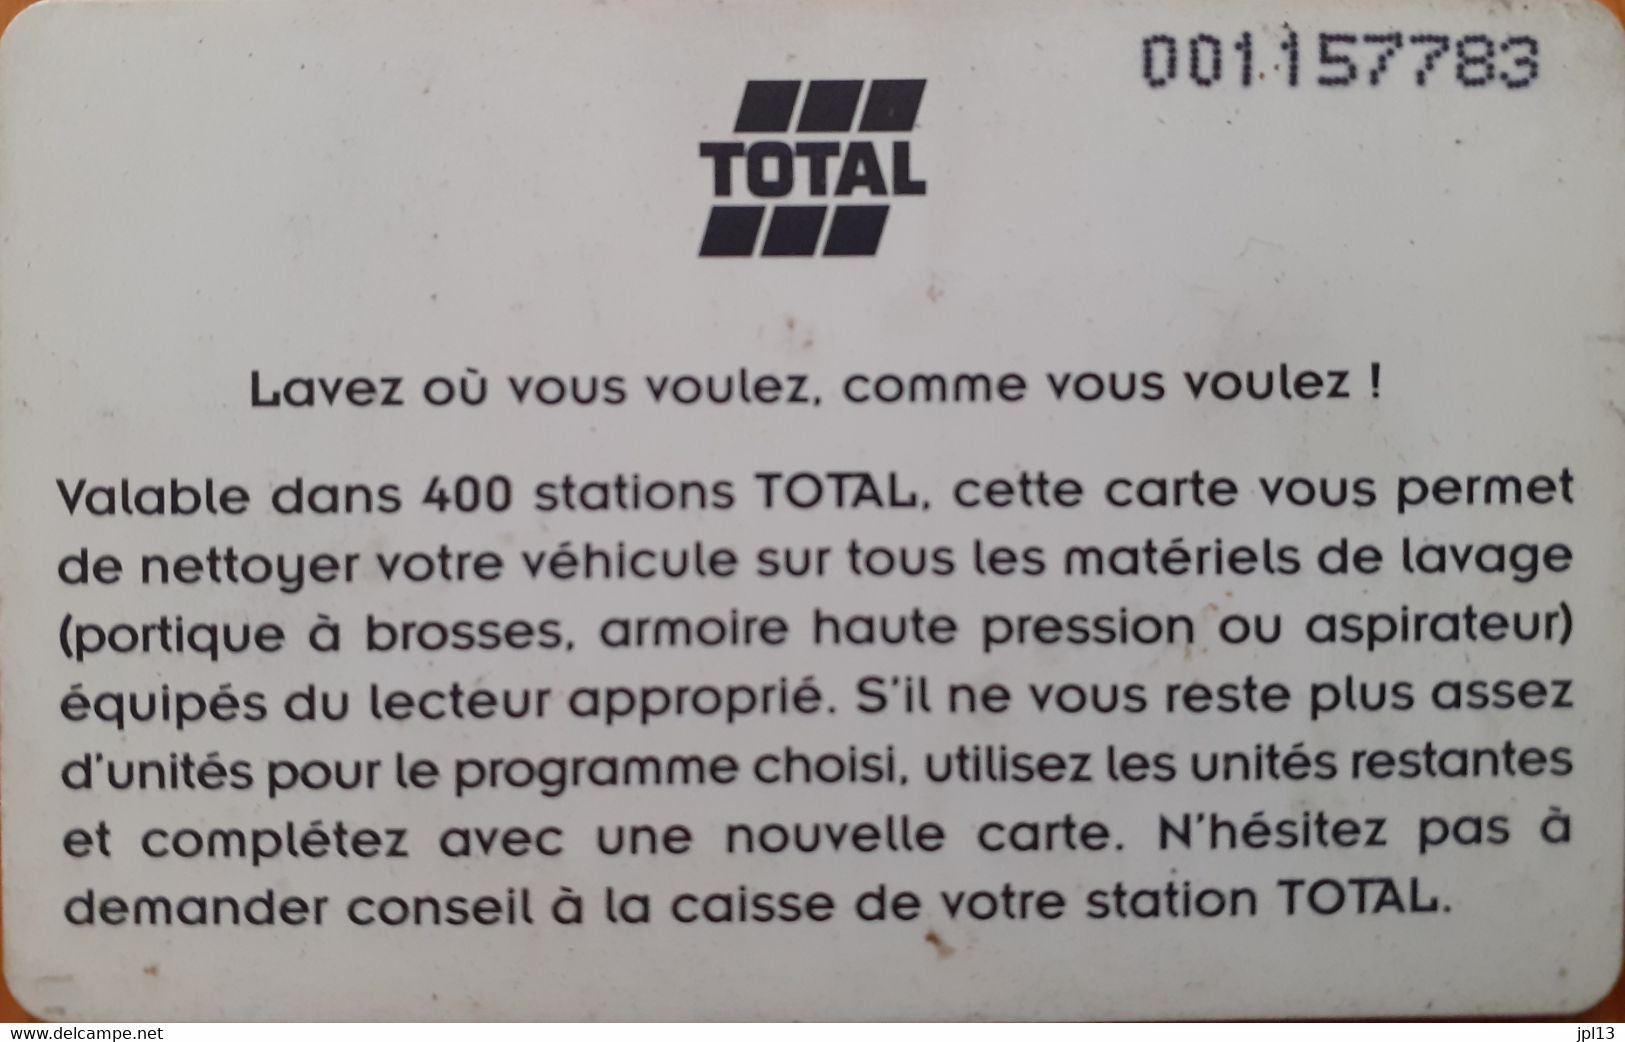 Carte Lavage - France - Total - 18 Unités, Grand N° De Série - Car Wash Cards